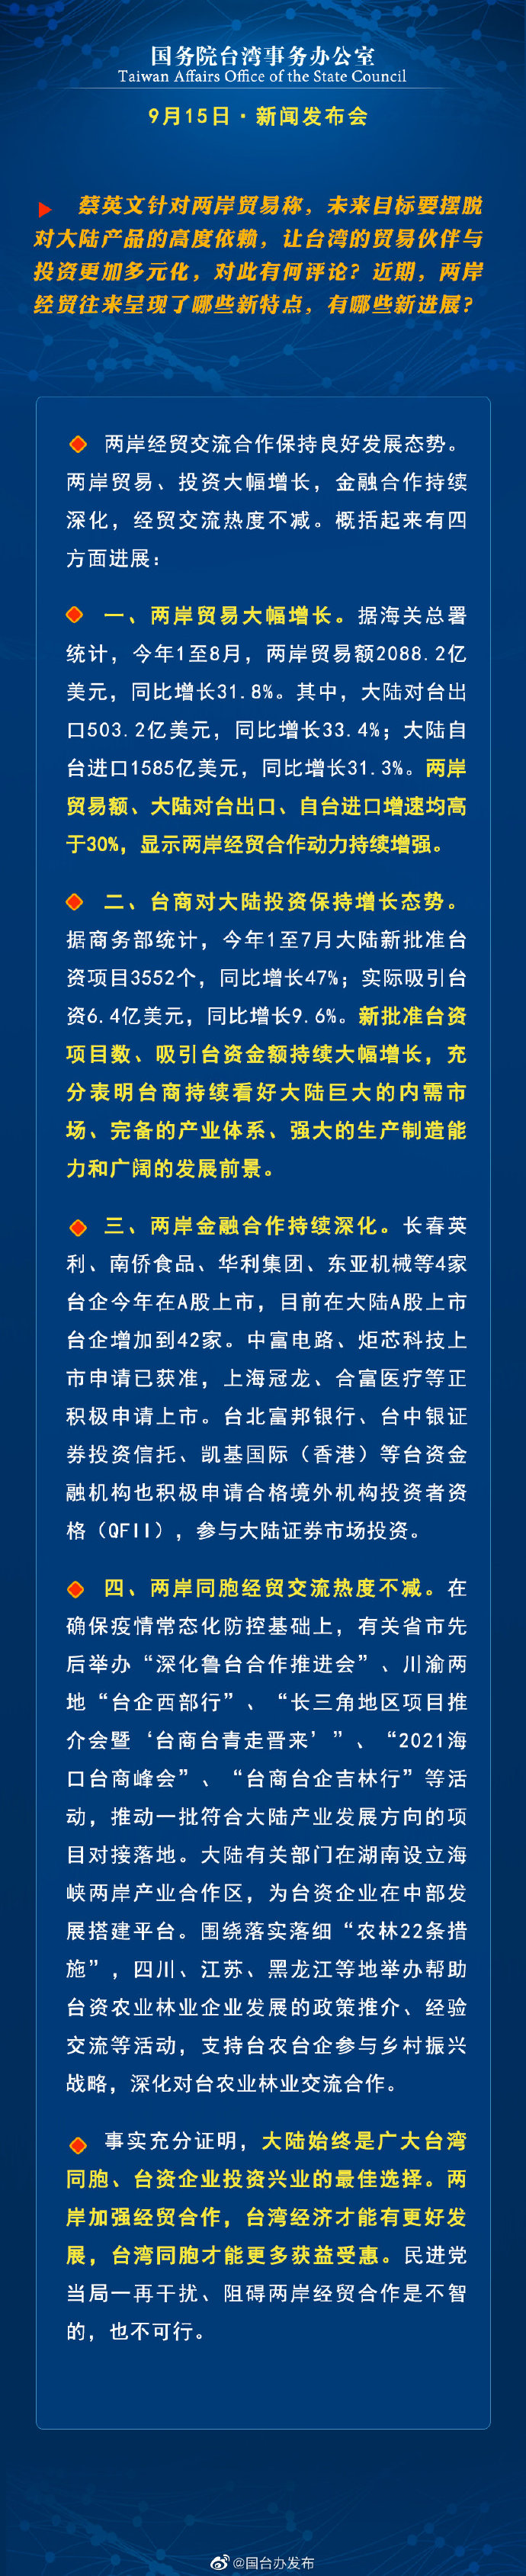 国务院台湾事务办公室9月15日·新闻发布会